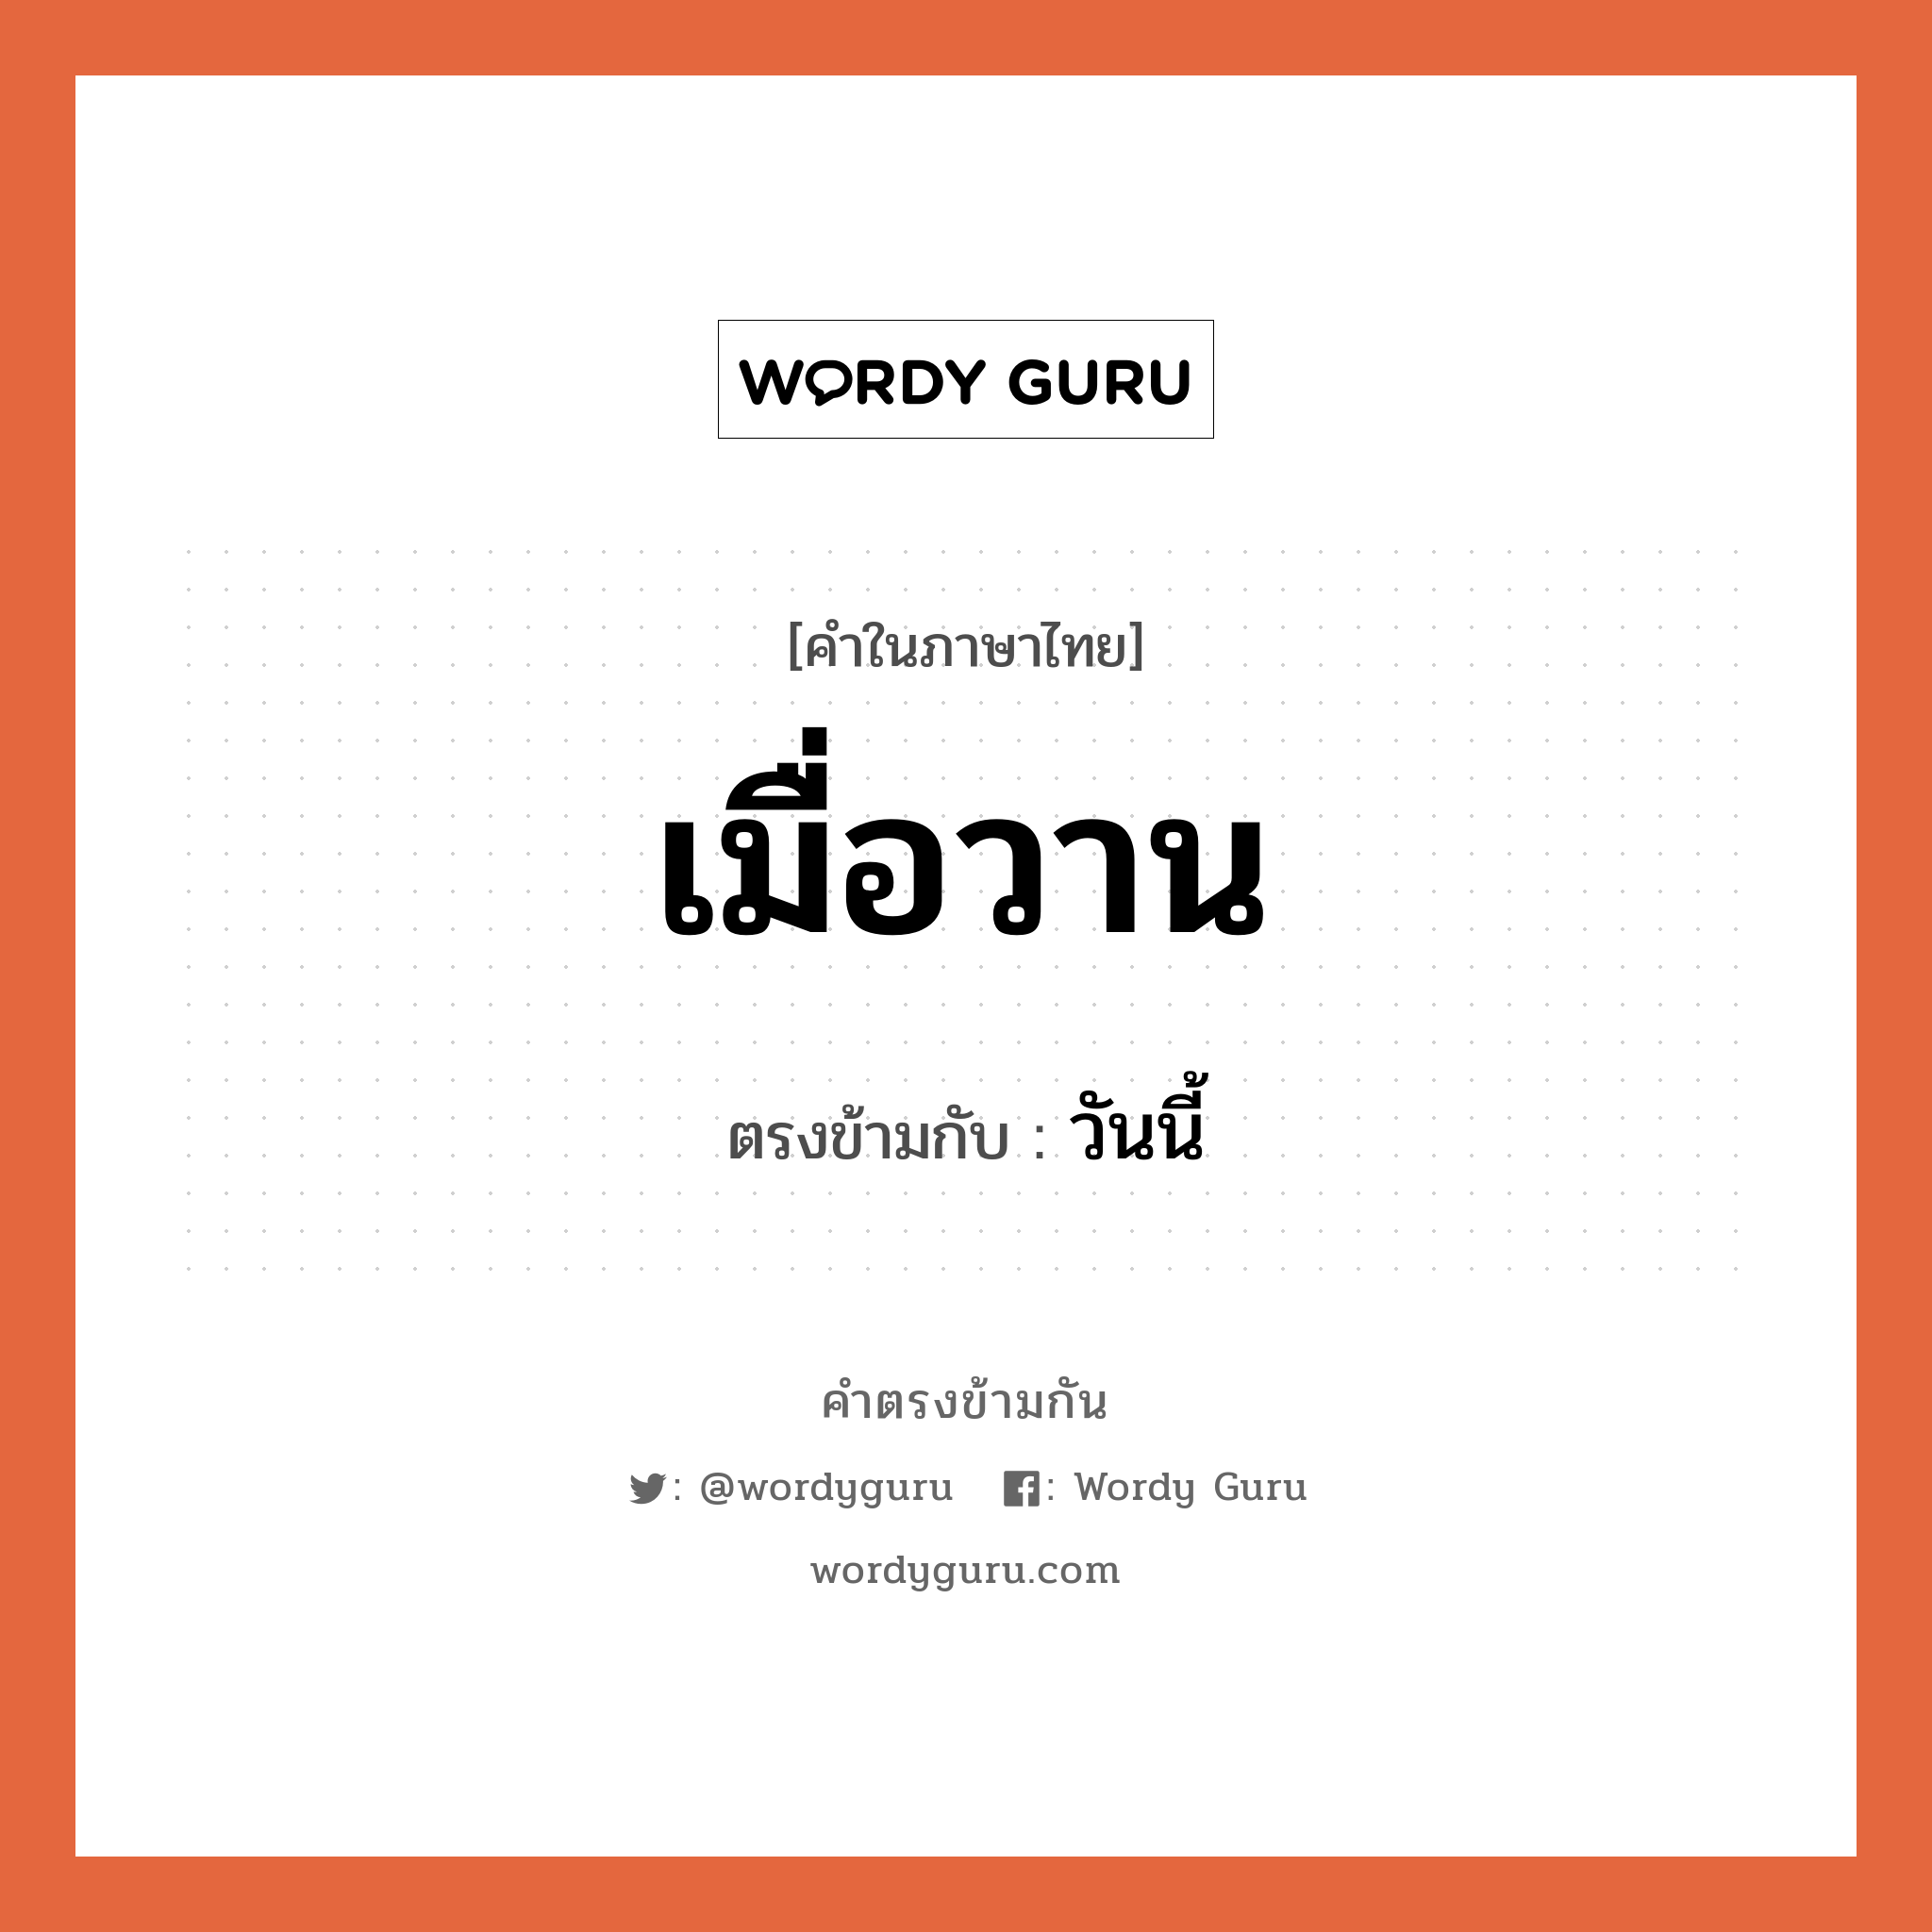 เมื่อวาน เป็นคำตรงข้ามกับคำไหนบ้าง?, คำในภาษาไทย เมื่อวาน ตรงข้ามกับ วันนี้ หมวด วันนี้